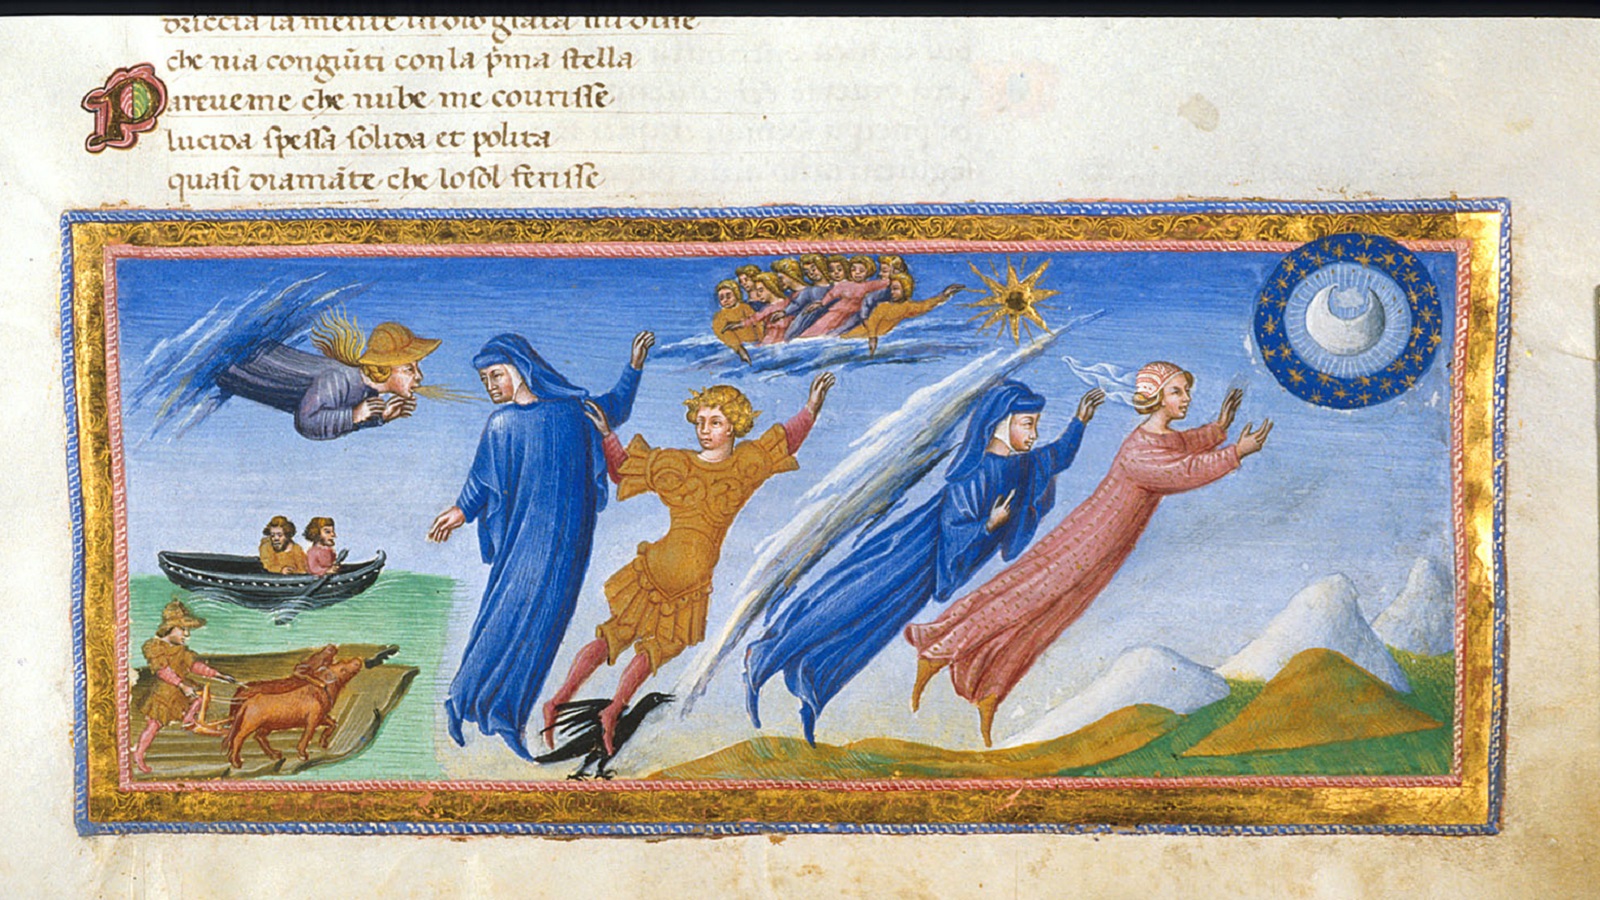  بياتريشي تقود دانتي إلى سماء القمر، مخطوط من القرن الخامس عشر، المكتبة البريطانية.